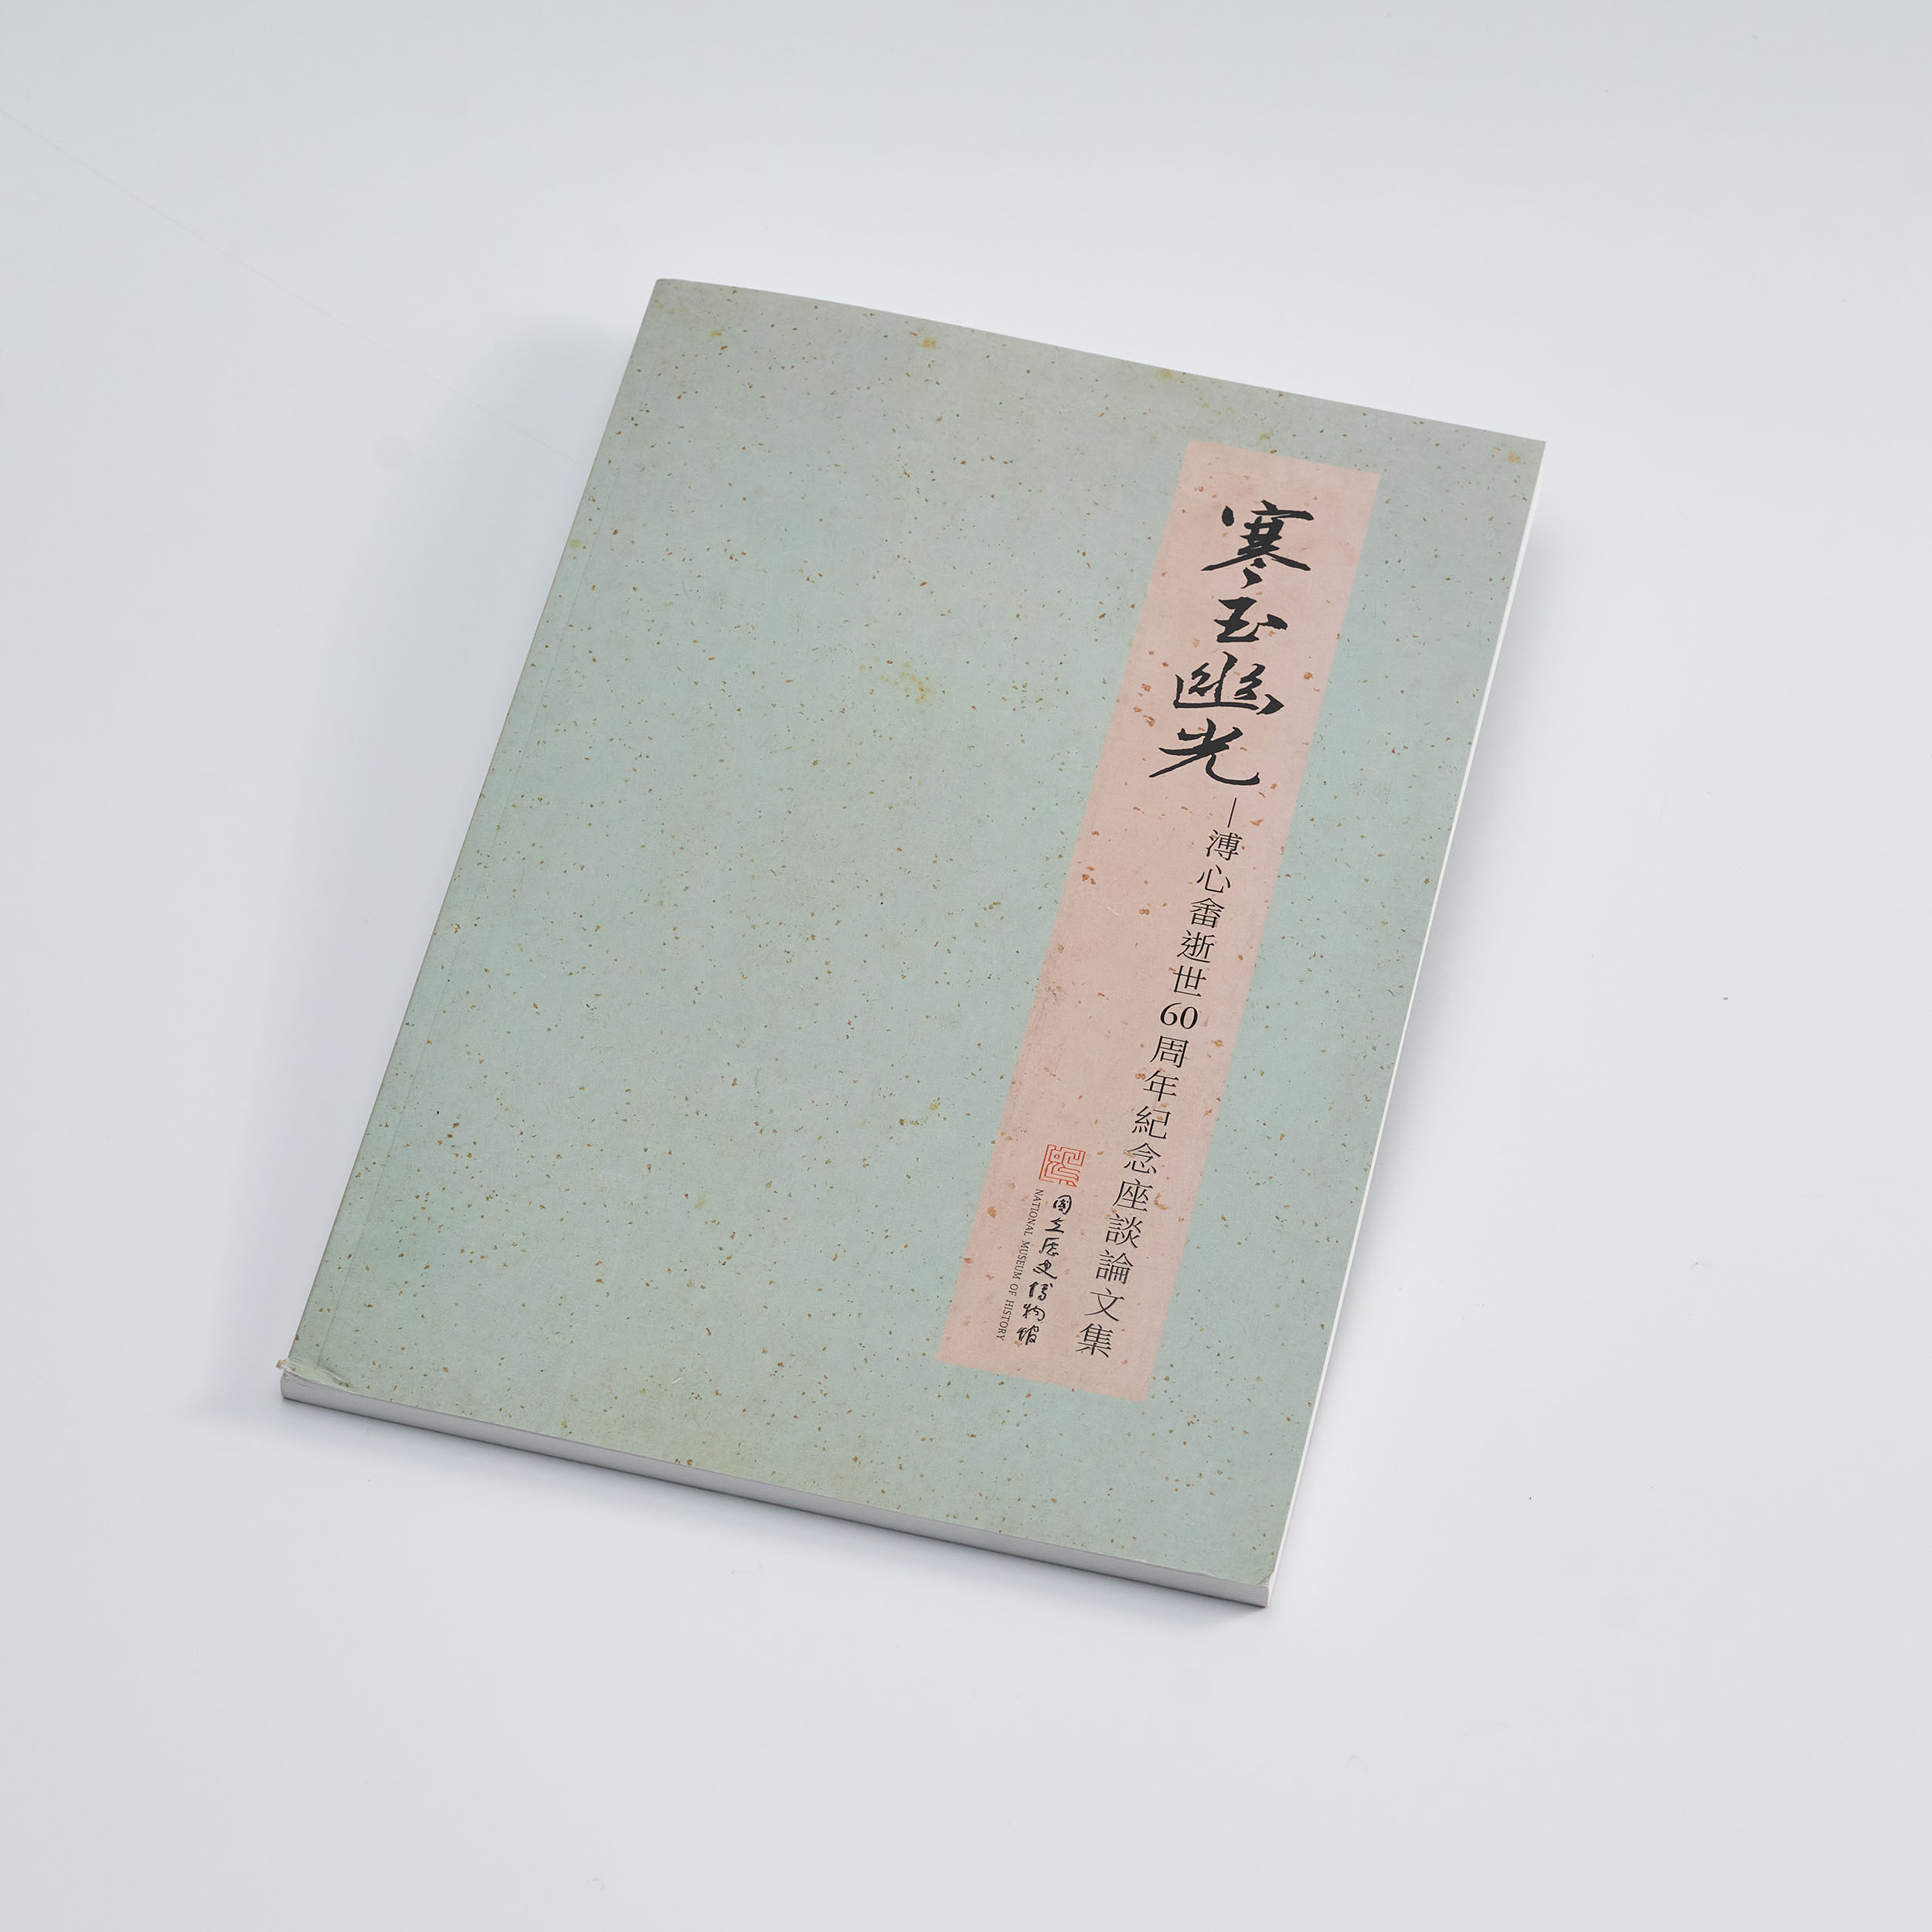 寒玉幽光: 溥心畬逝世60周年紀念座談論文集 Cold jade's dim glow: symposium and essay collection commemorating the 60th anniversary of Pu Hsin-Yu's passing